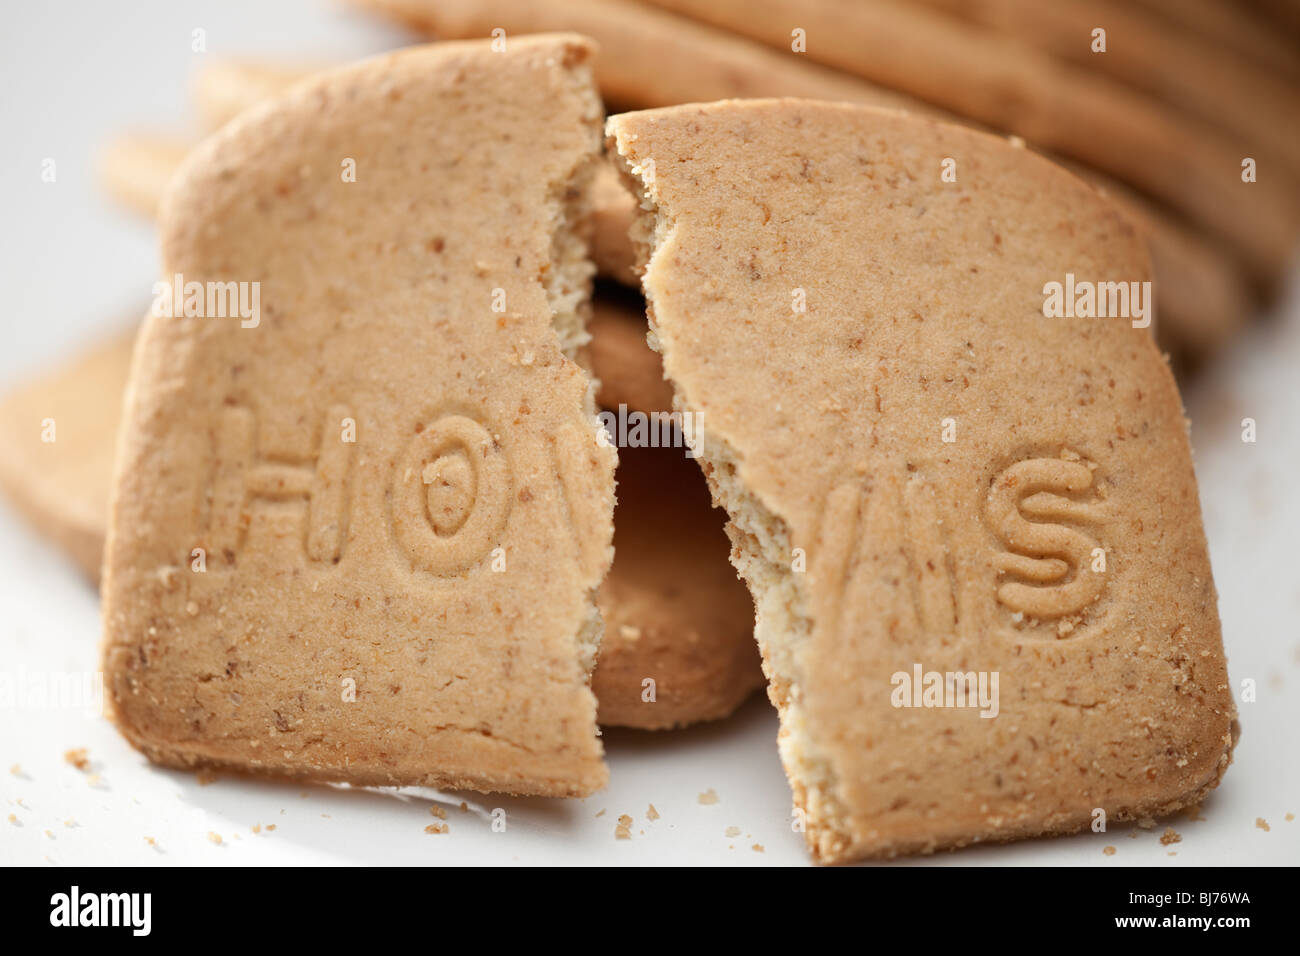 Broken Hovis digestive biscuit Stock Photo